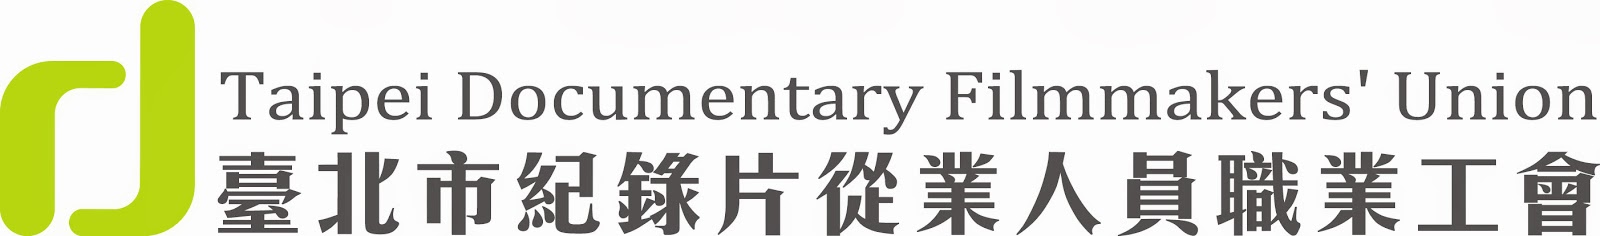 紀錄片工會Taipei Documentary Filmmakers